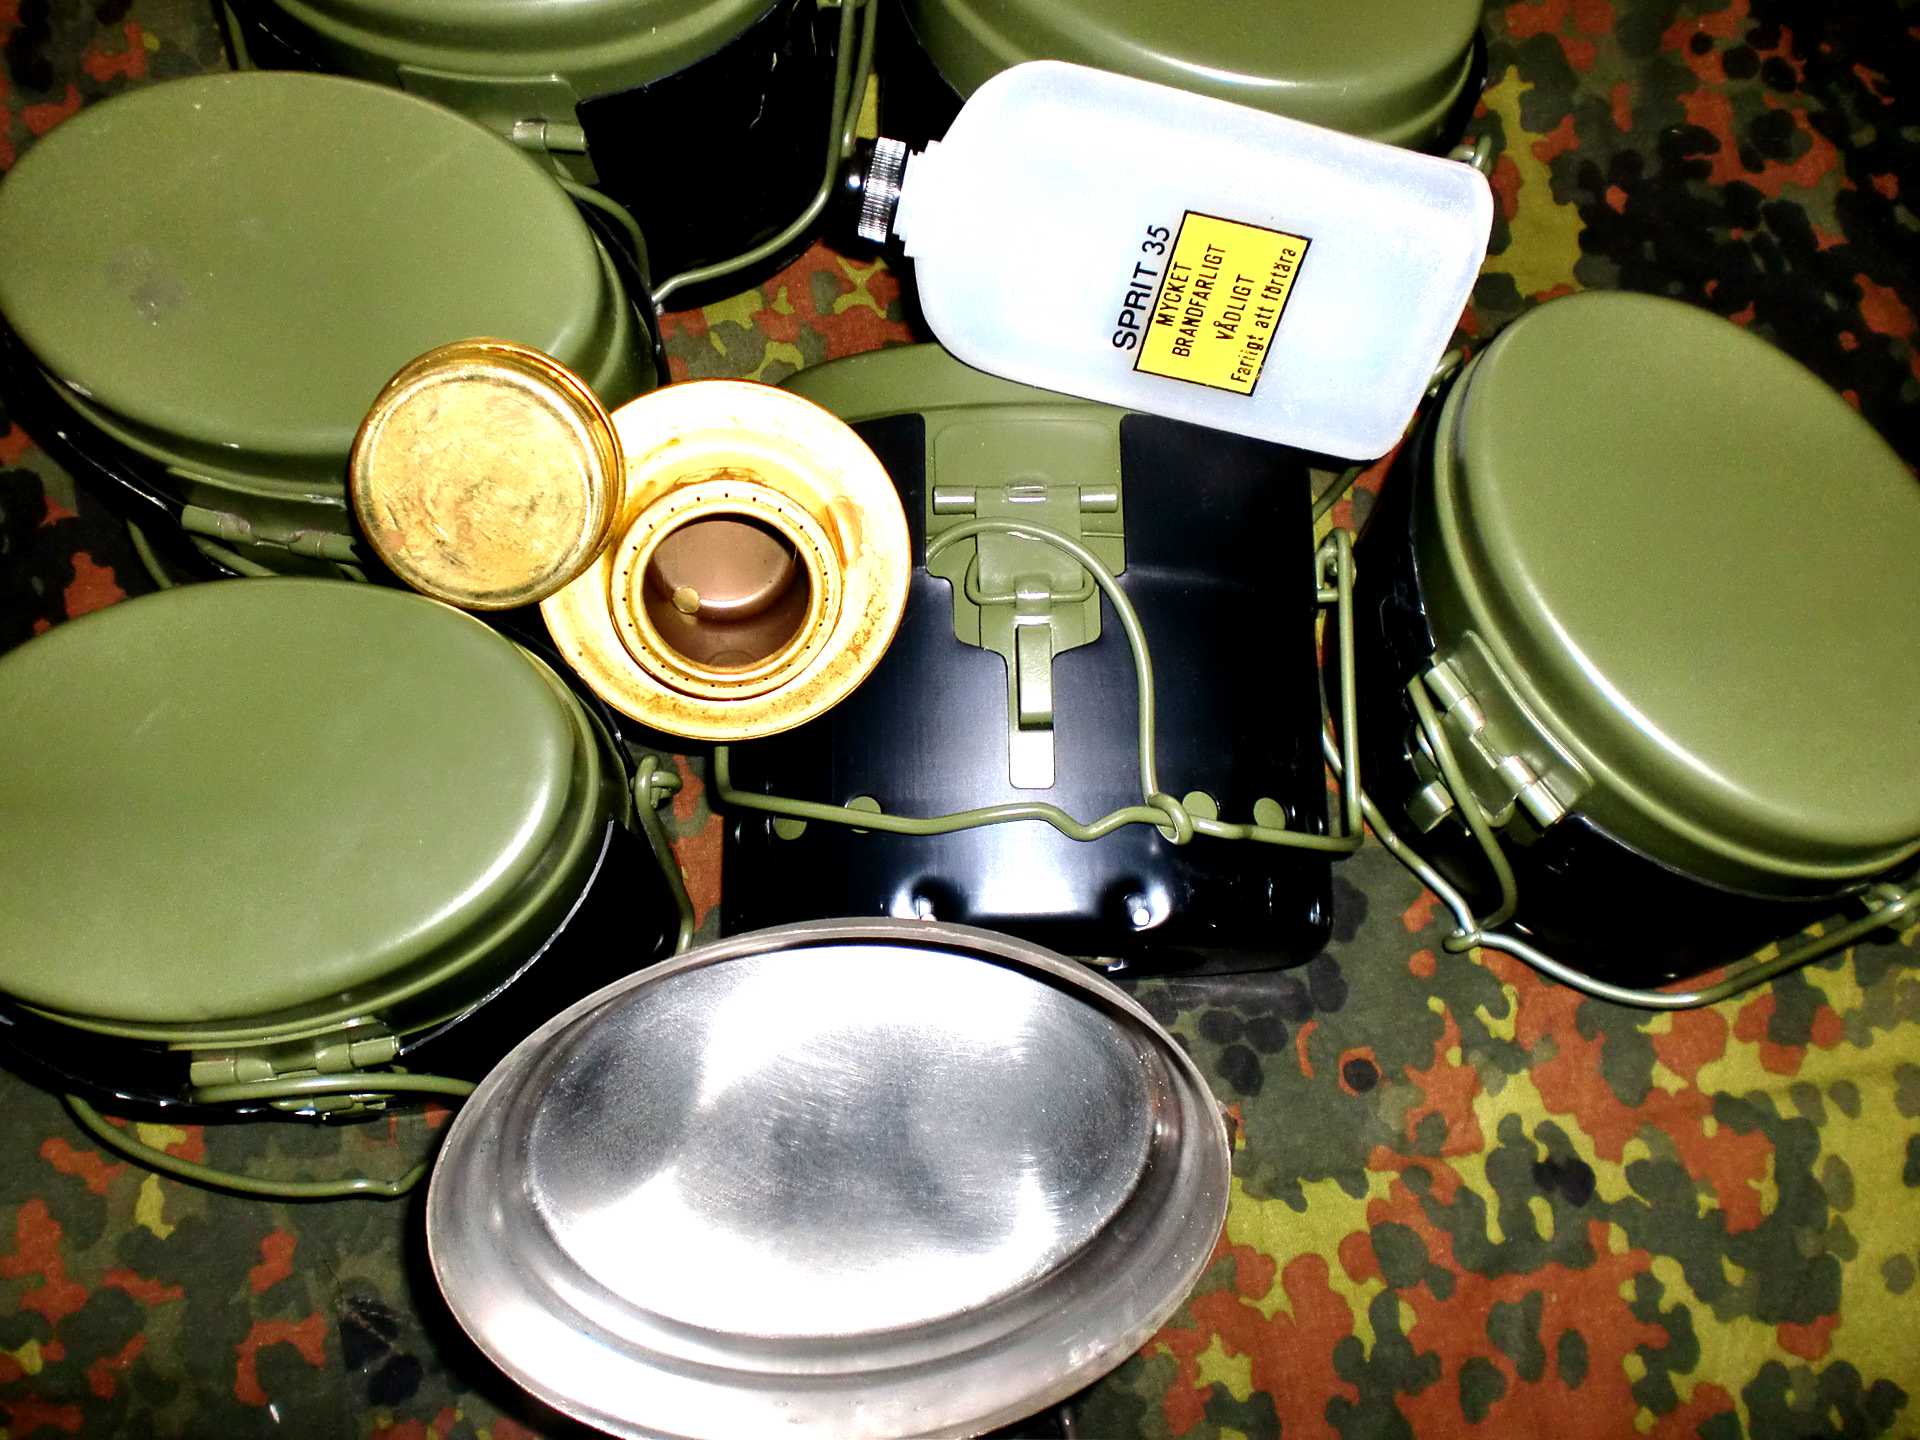 Армейская посуда. Шведский котелок м39. Шведский армейский котелок м39. Котелок Шак nc70. Шведский котелок м39 на костёре.